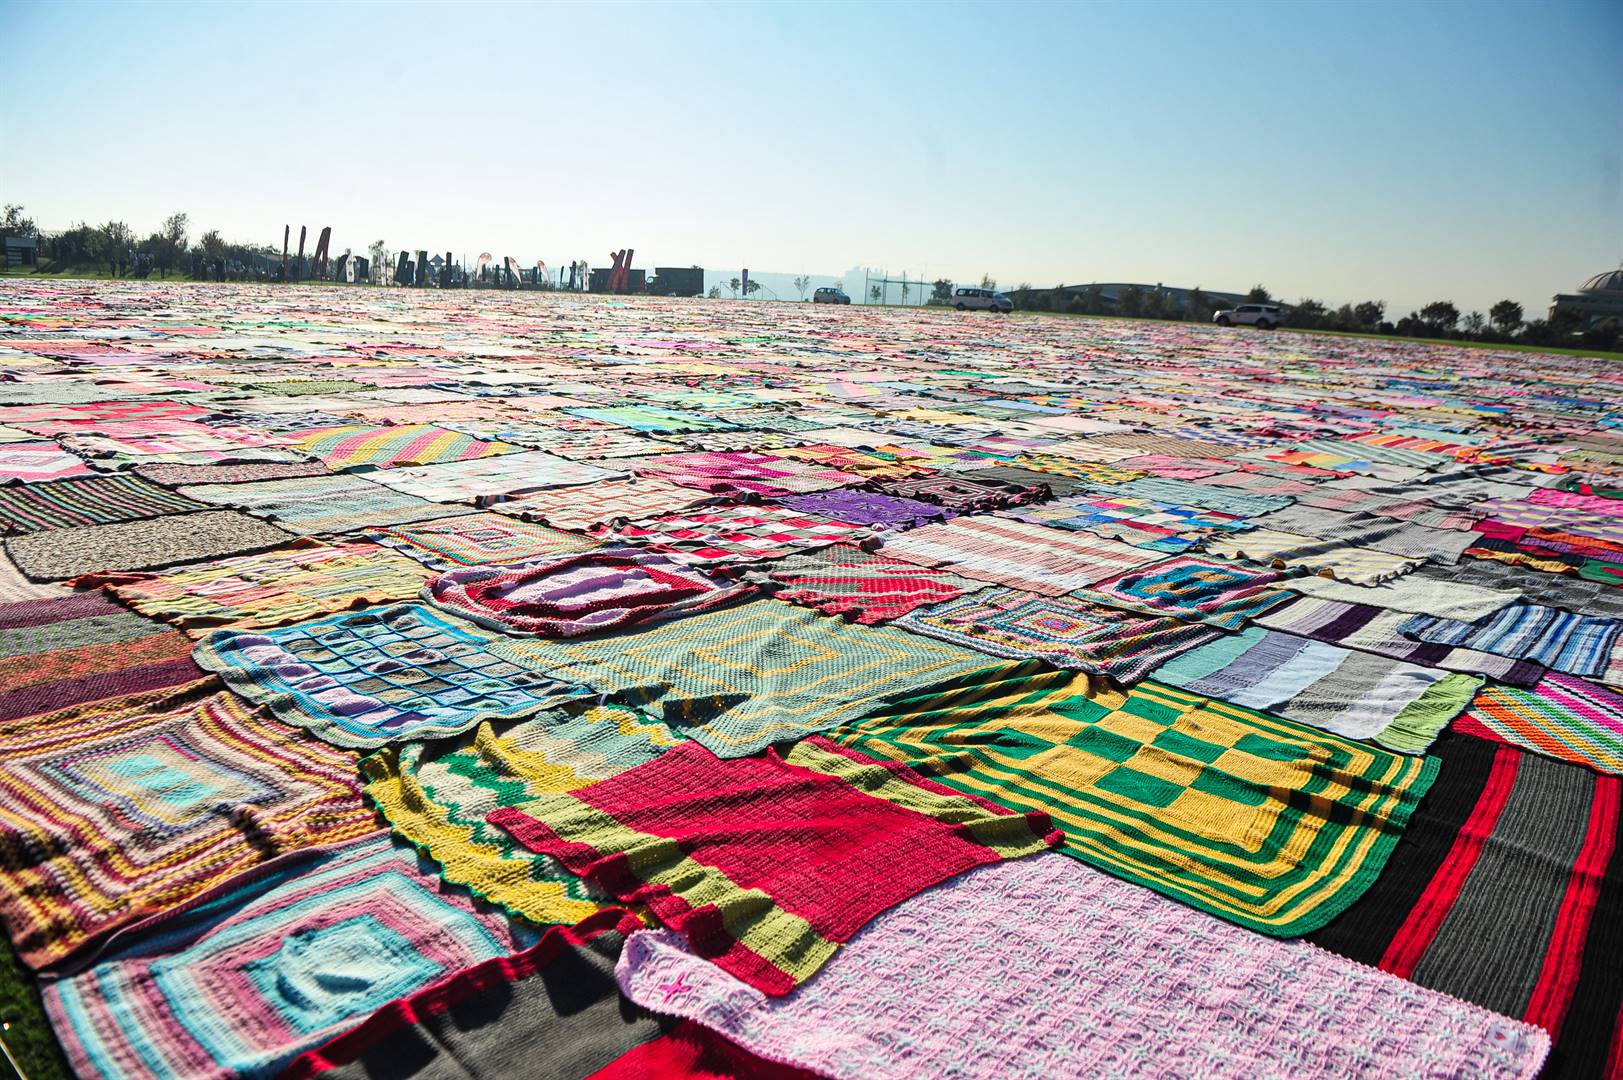 Donación de un donante para ayudar a difundir el calor con 4500 mantas en honor a Madiba